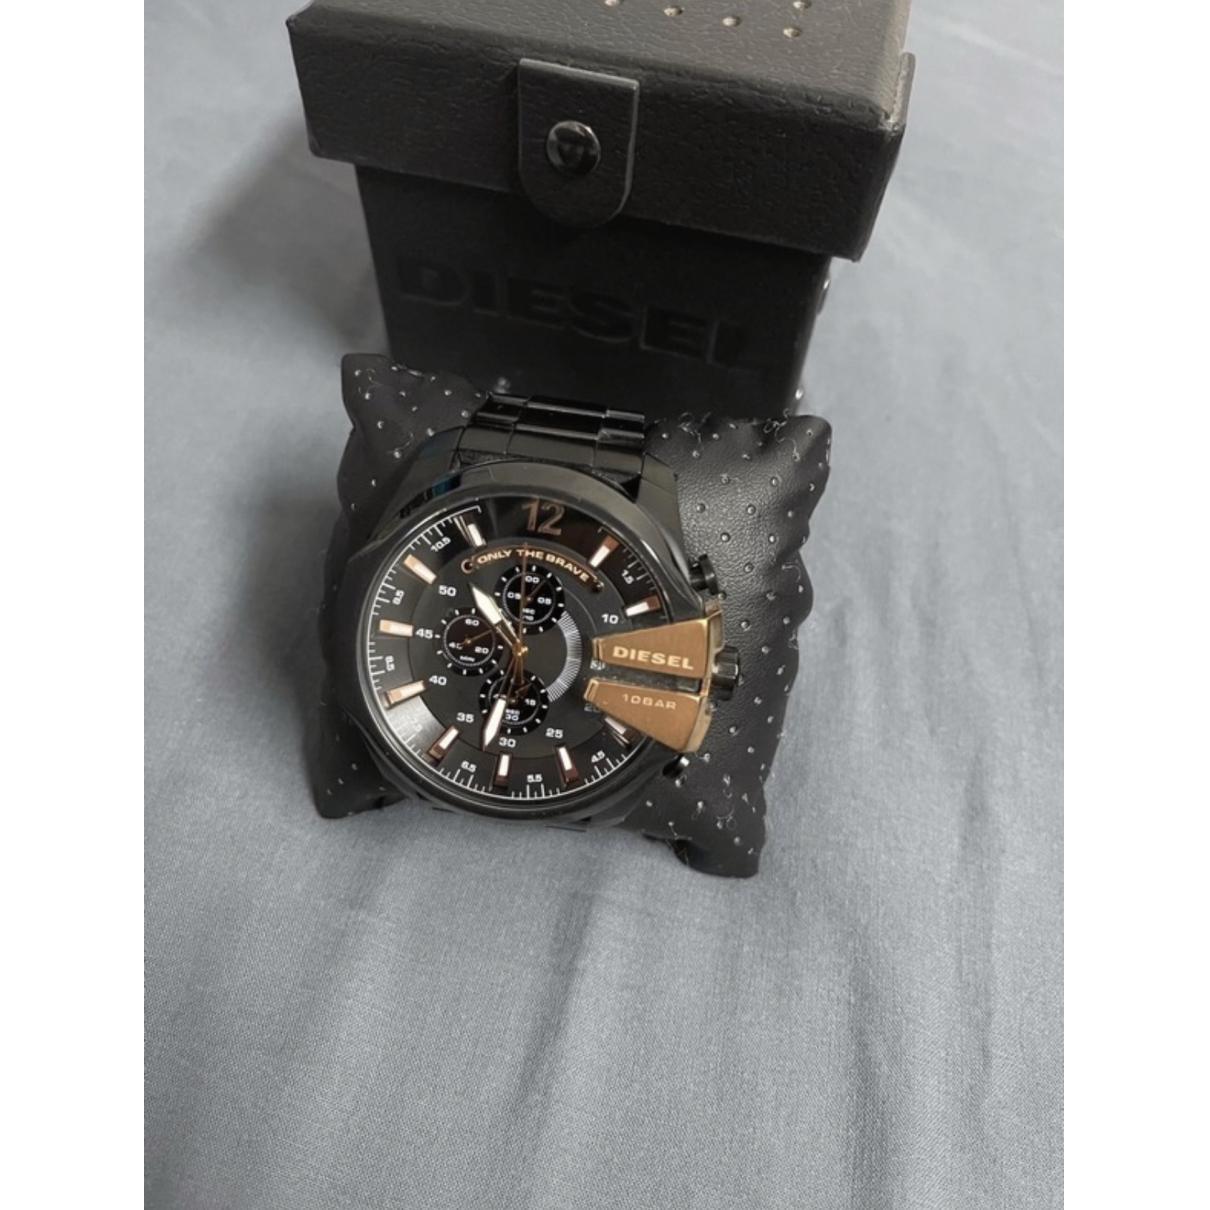 in 21596088 Diesel Black Steel - Watch